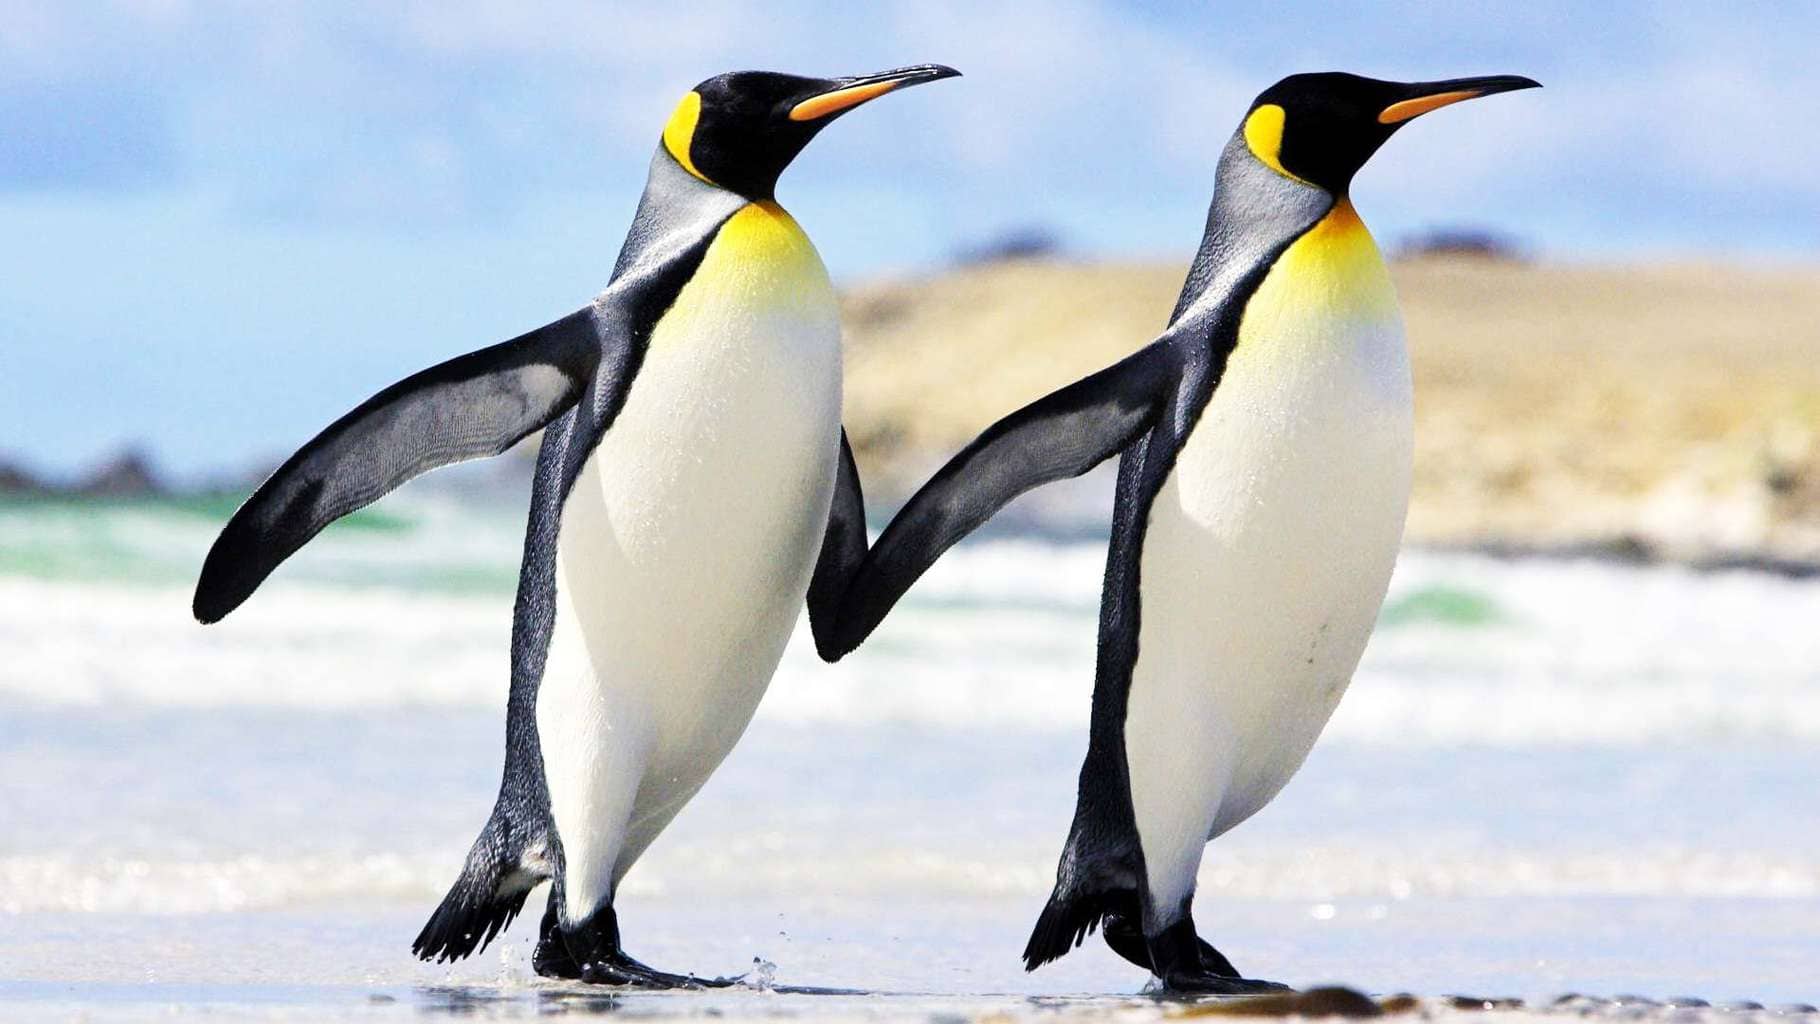 Penguin-hands-together-friendship